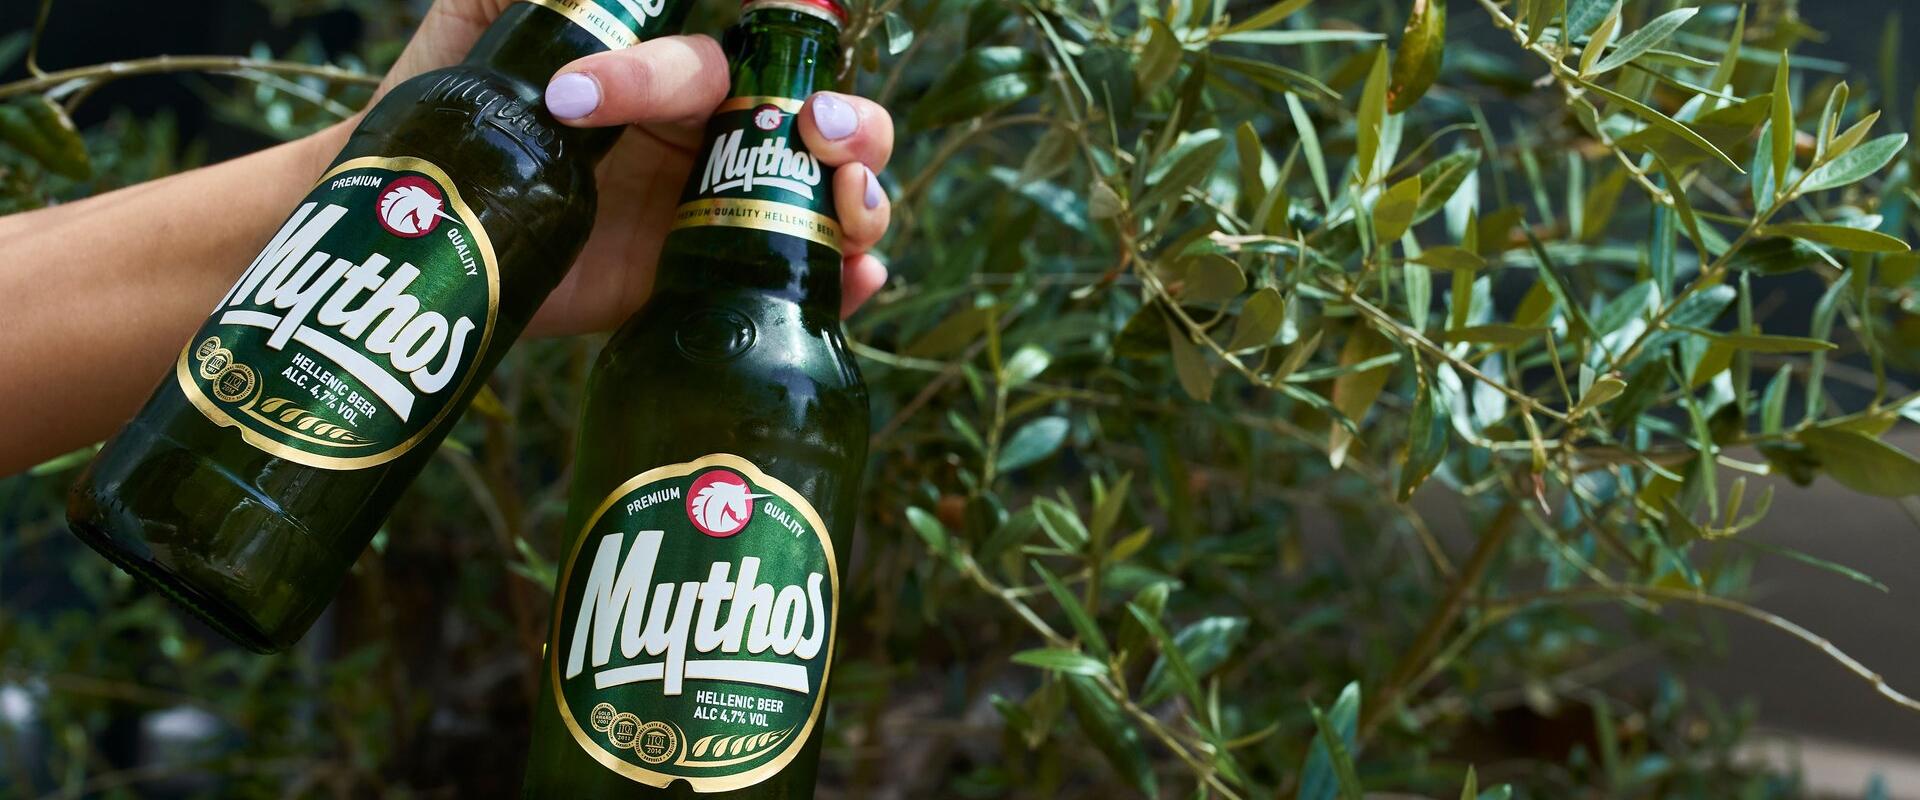 Mythos- Kreeka õlu